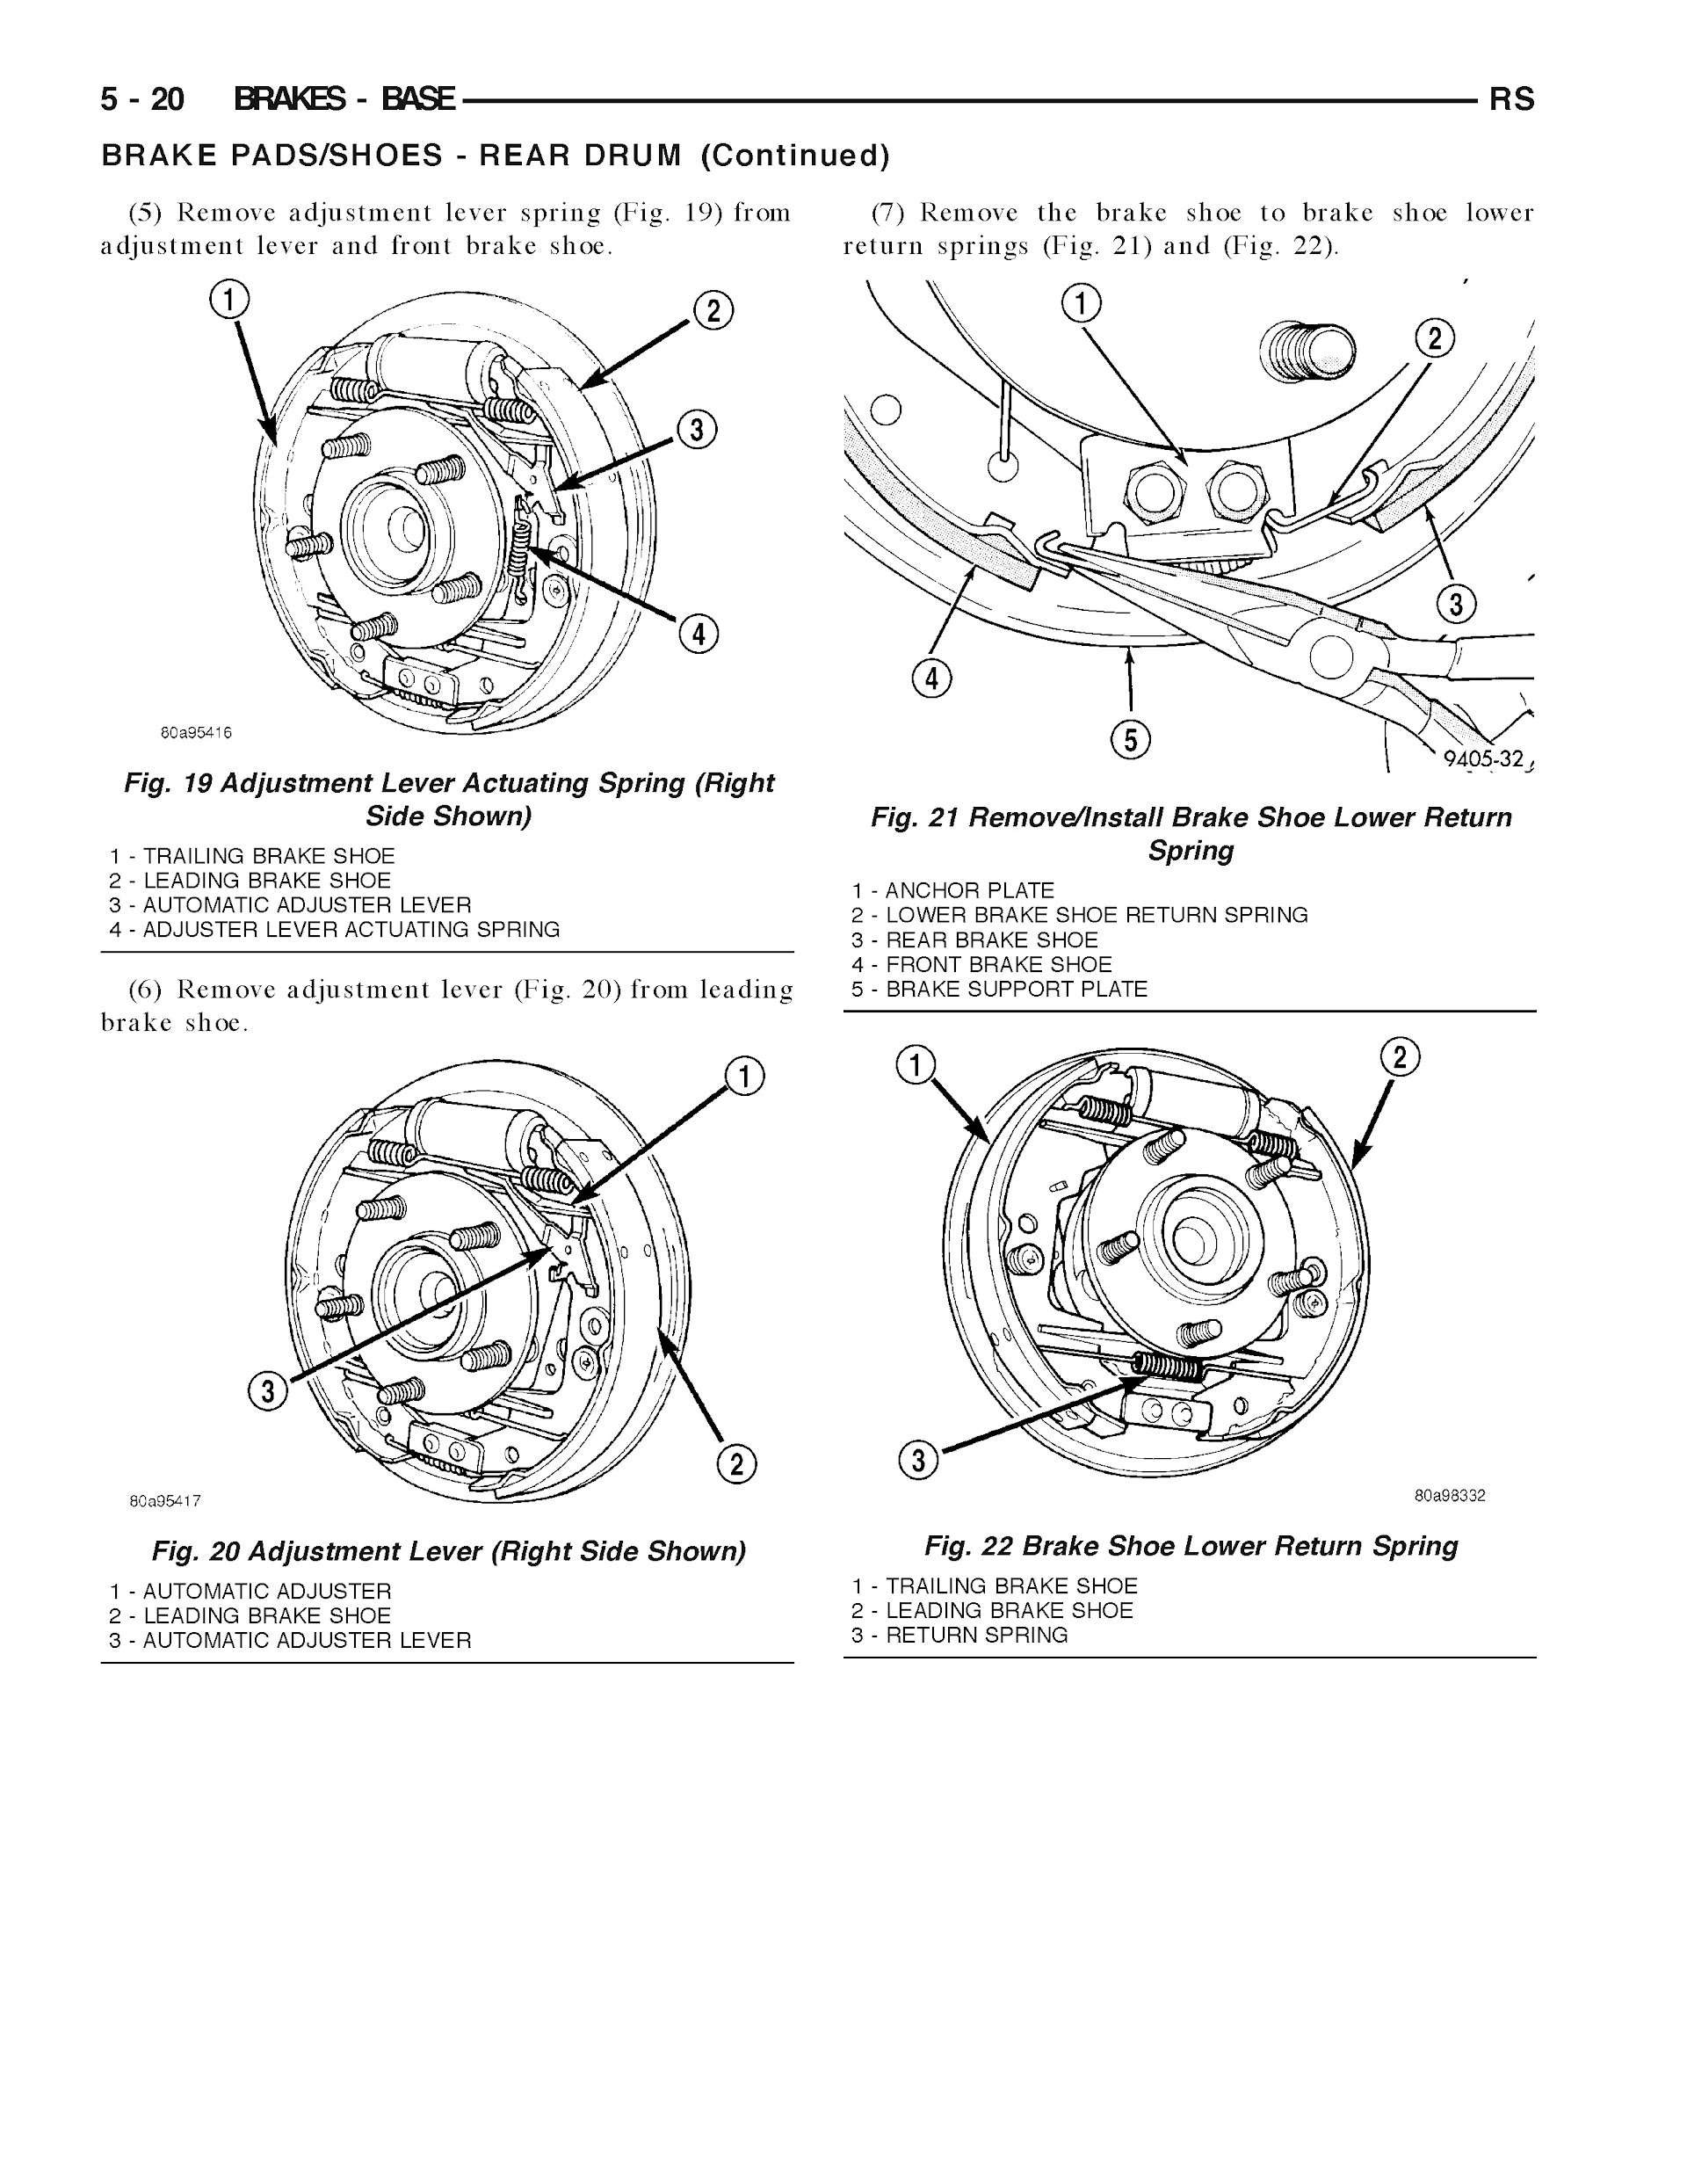 2005-2006 Dodge Grand Caravan Repair Manual, Brakes